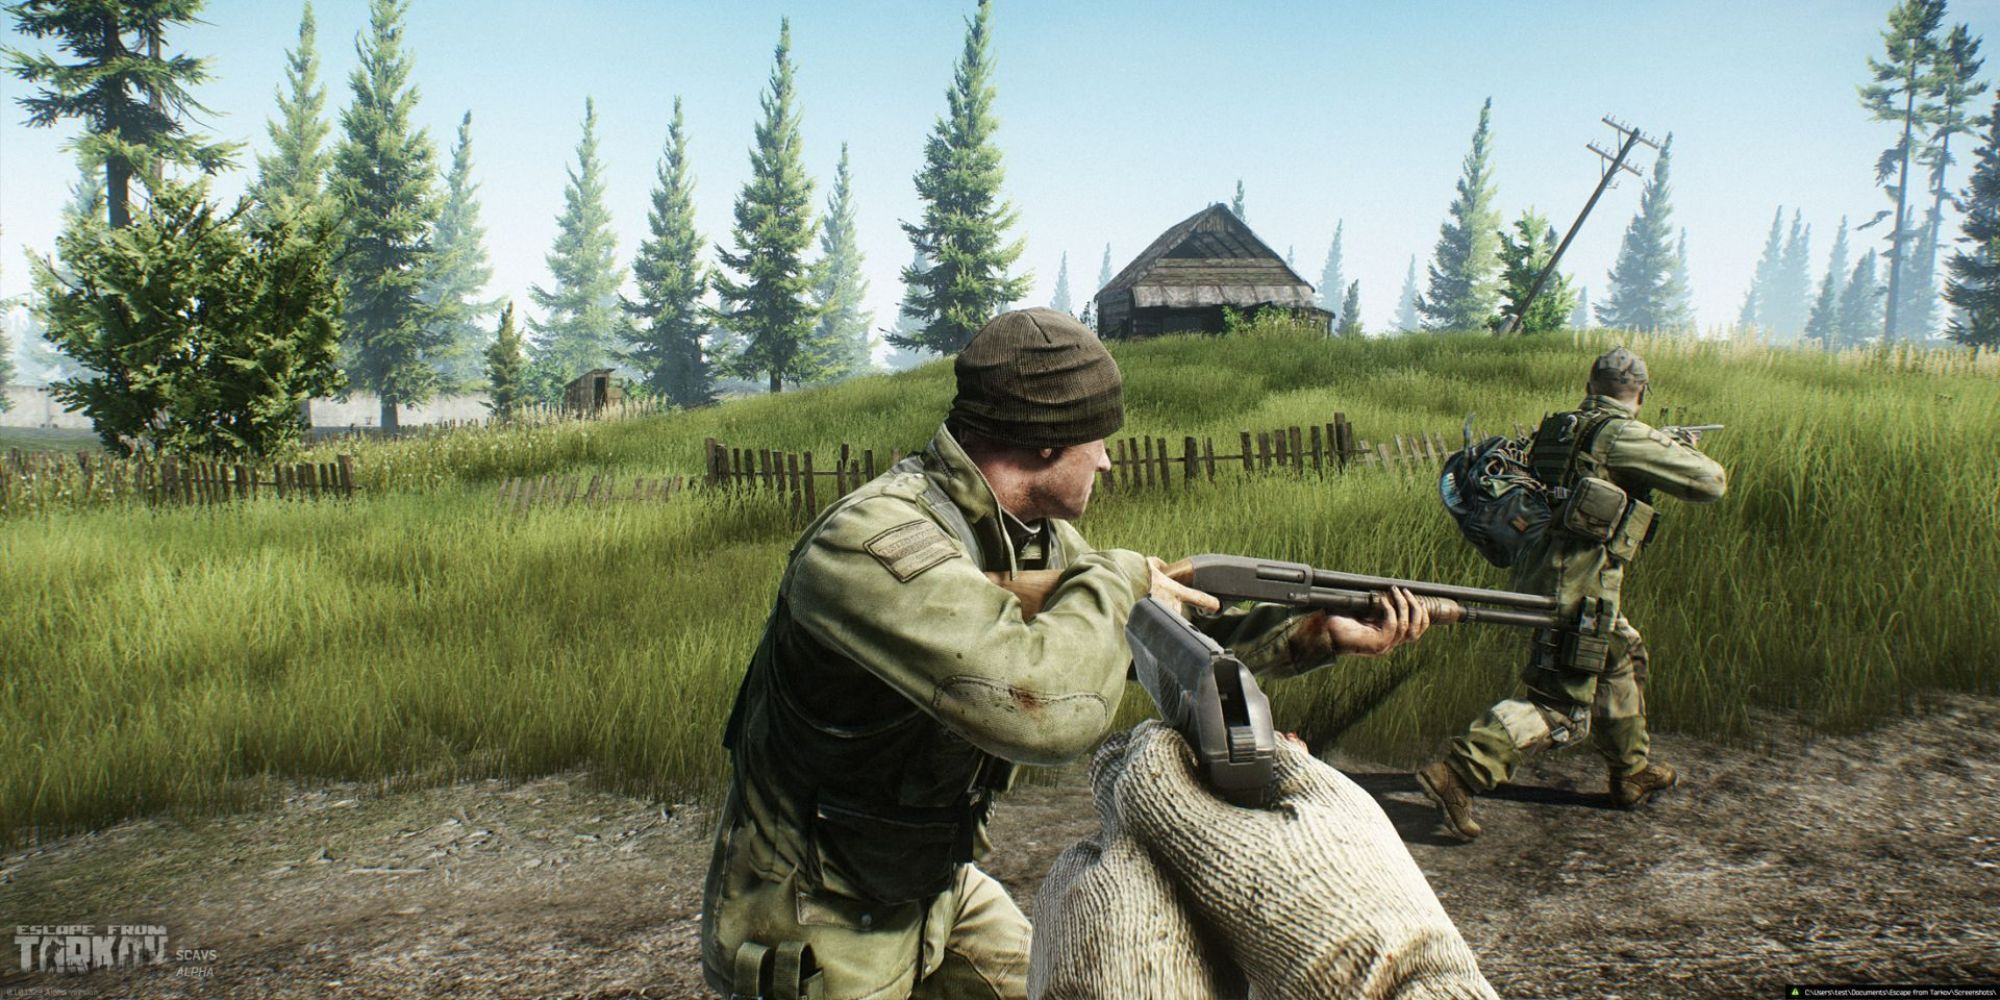 Игрок направляет пистолет на пару диких в Escape from Tarkov.